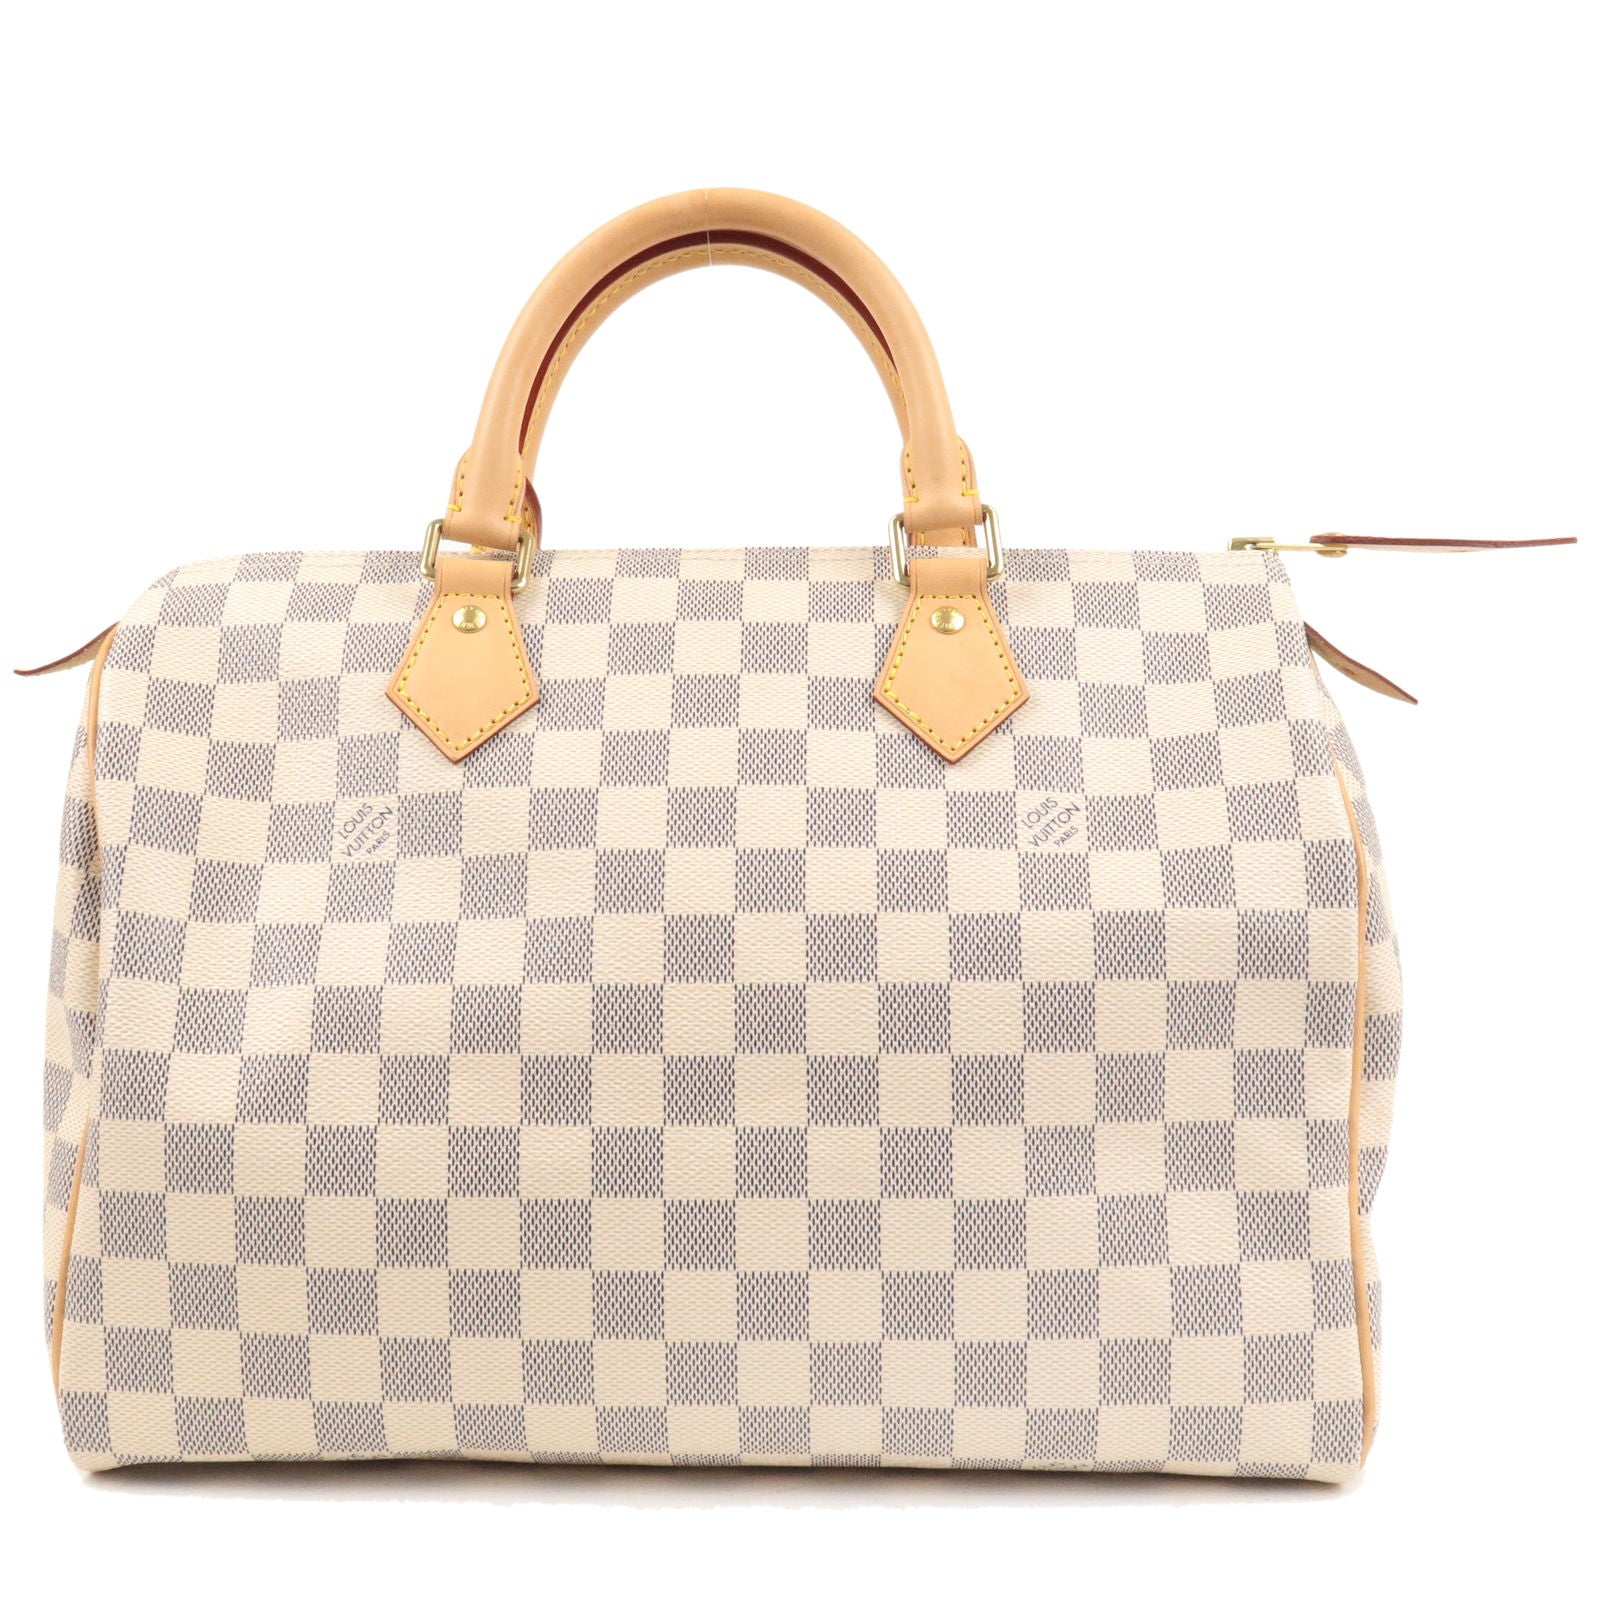 White Louis Vuitton Damier Azur Speedy Bandouliere 30 Boston Bag